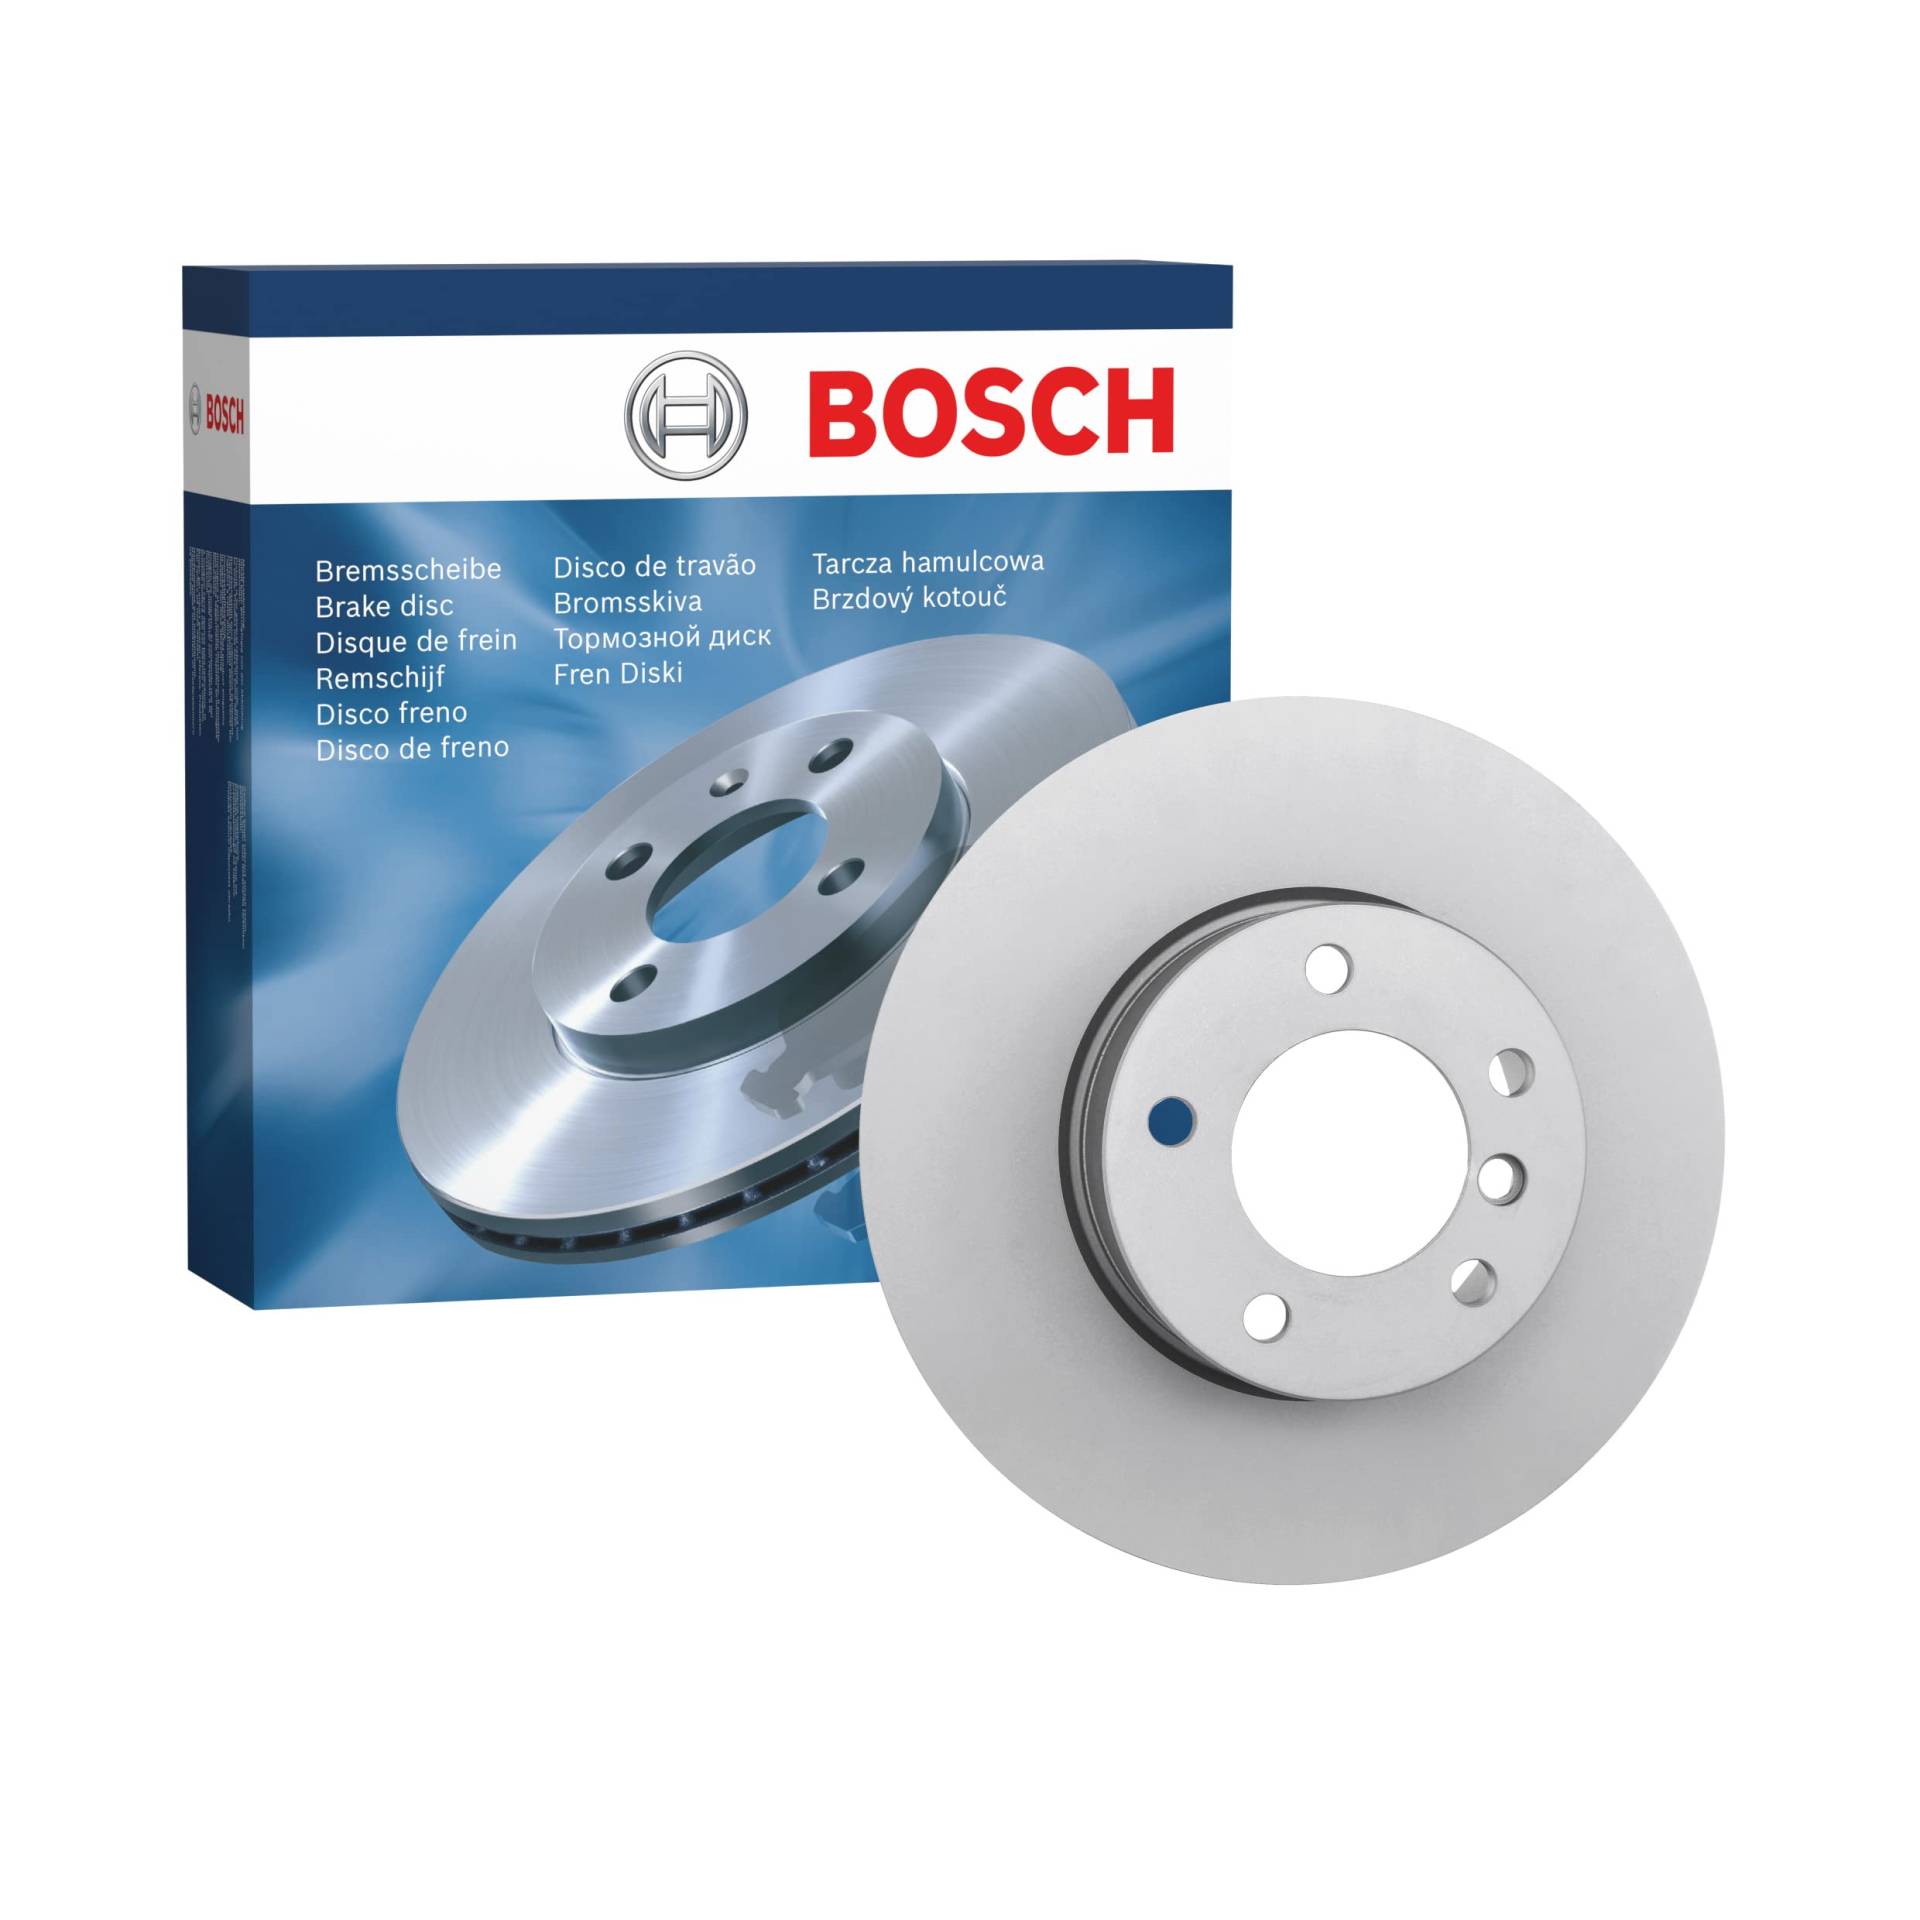 Bosch BD1248 Bremsscheiben - Vorderachse - ECE-R90 Zertifizierung - eine Bremsscheibe von Bosch Automotive